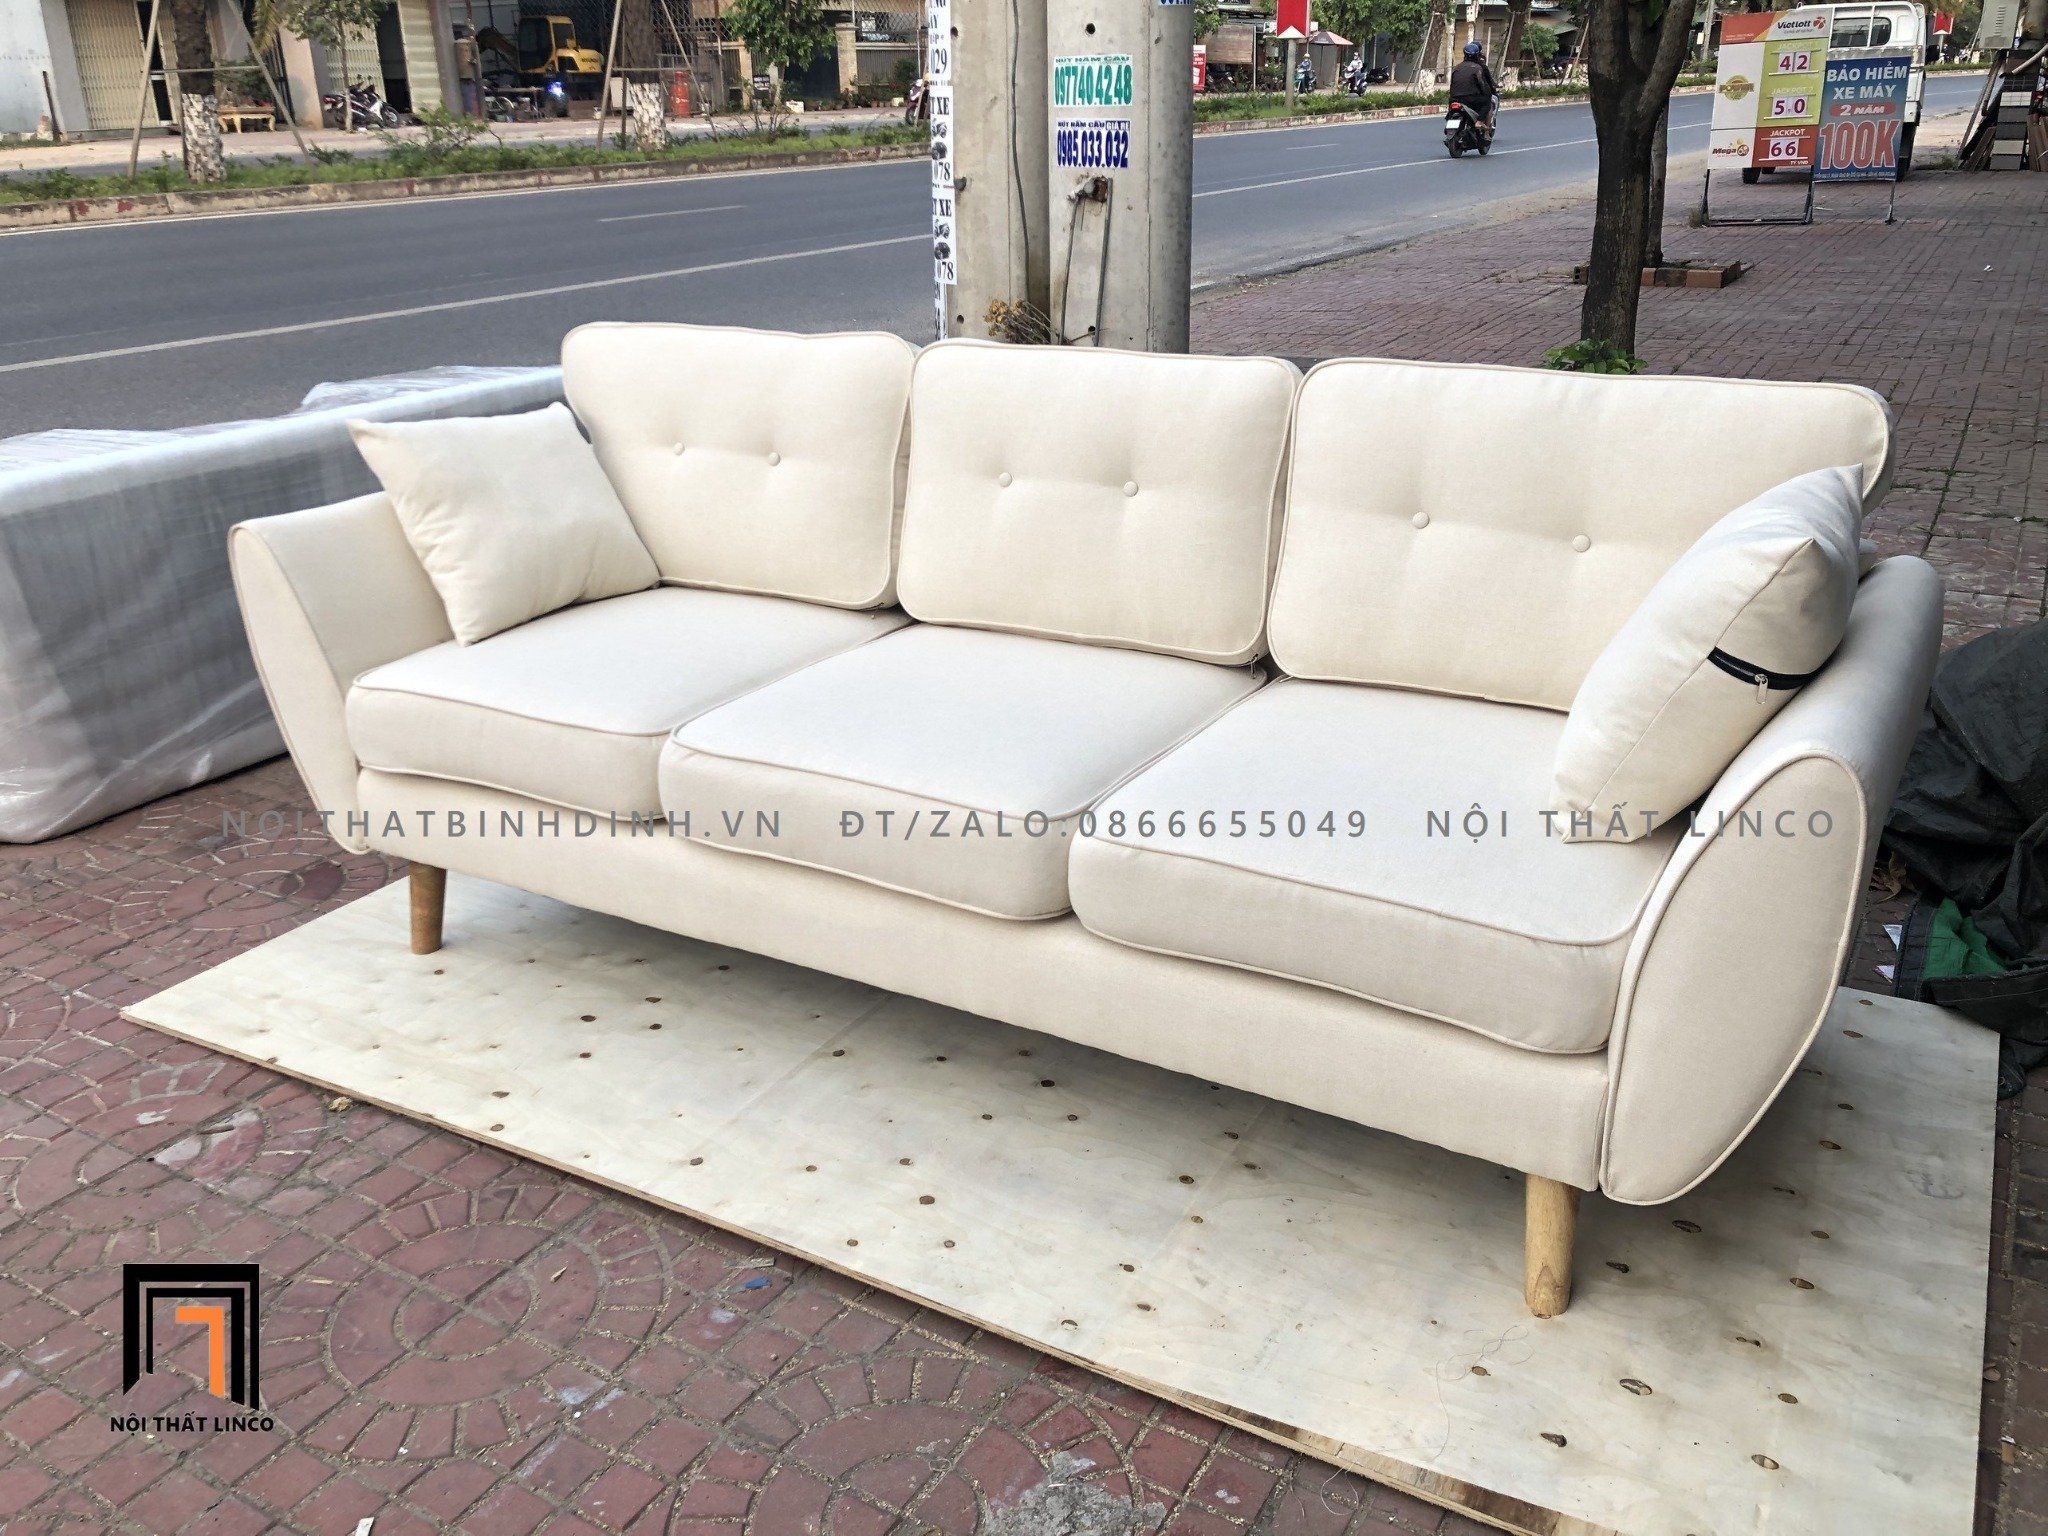  Sofa băng hiện đại màu kem BT62 Dropy dài 2m2 3 nệm ngồi 